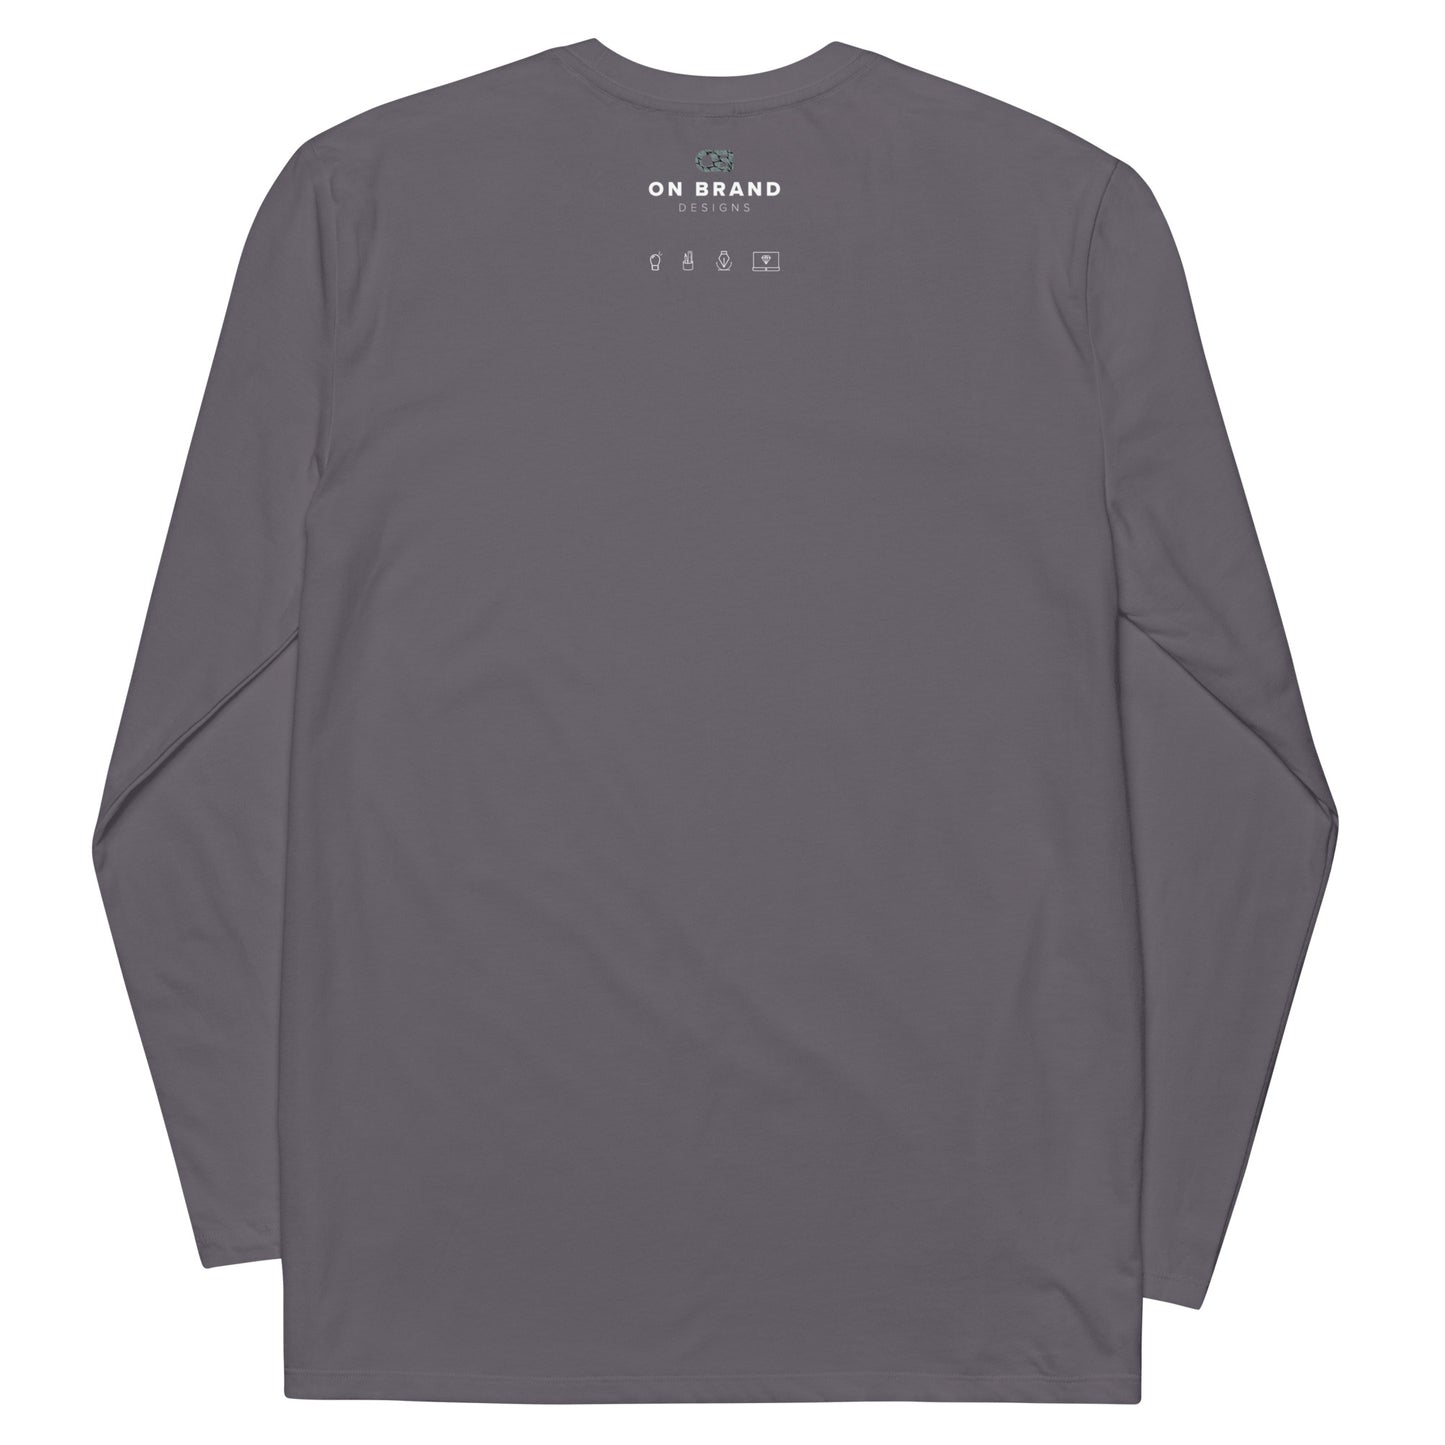 (OB)viously Unisex fashion long sleeve shirt